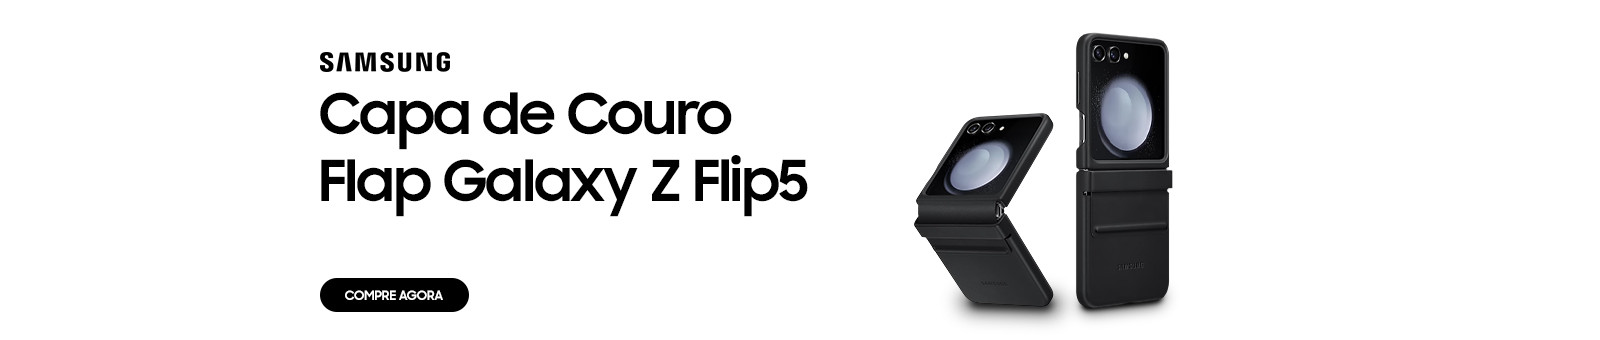 Capa de couro Flap Galaxy Z Flip5